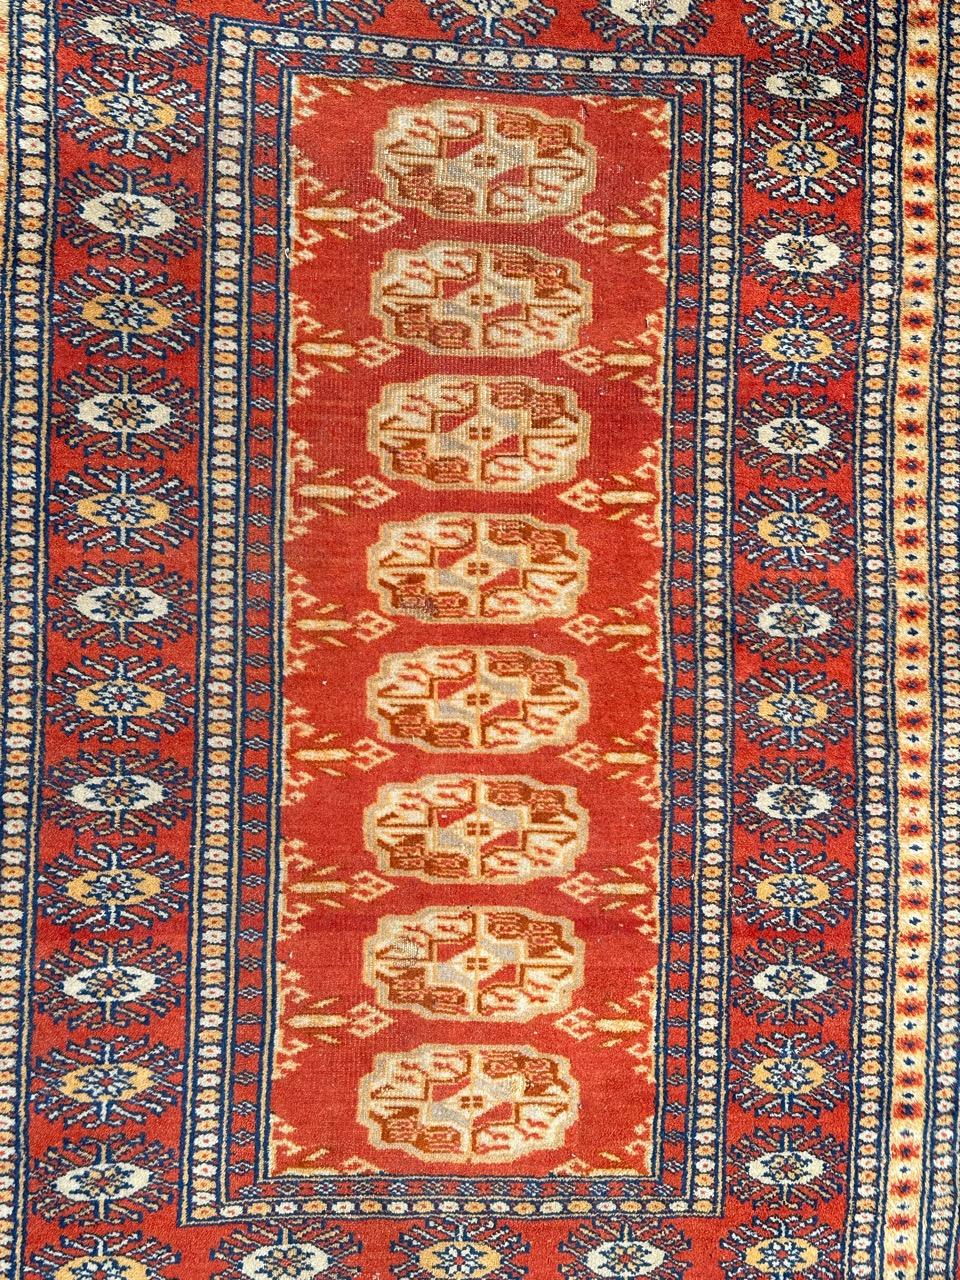 Hübscher kleiner pakistanischer Vintage-Teppich mit schönem geometrischem Muster im Stil der turkmenischen Bokhara-Teppiche und schönen Farben mit orangefarbenem Feld, rot, grau, weiß und schwarz, komplett und fein handgeknüpft mit Wolle auf